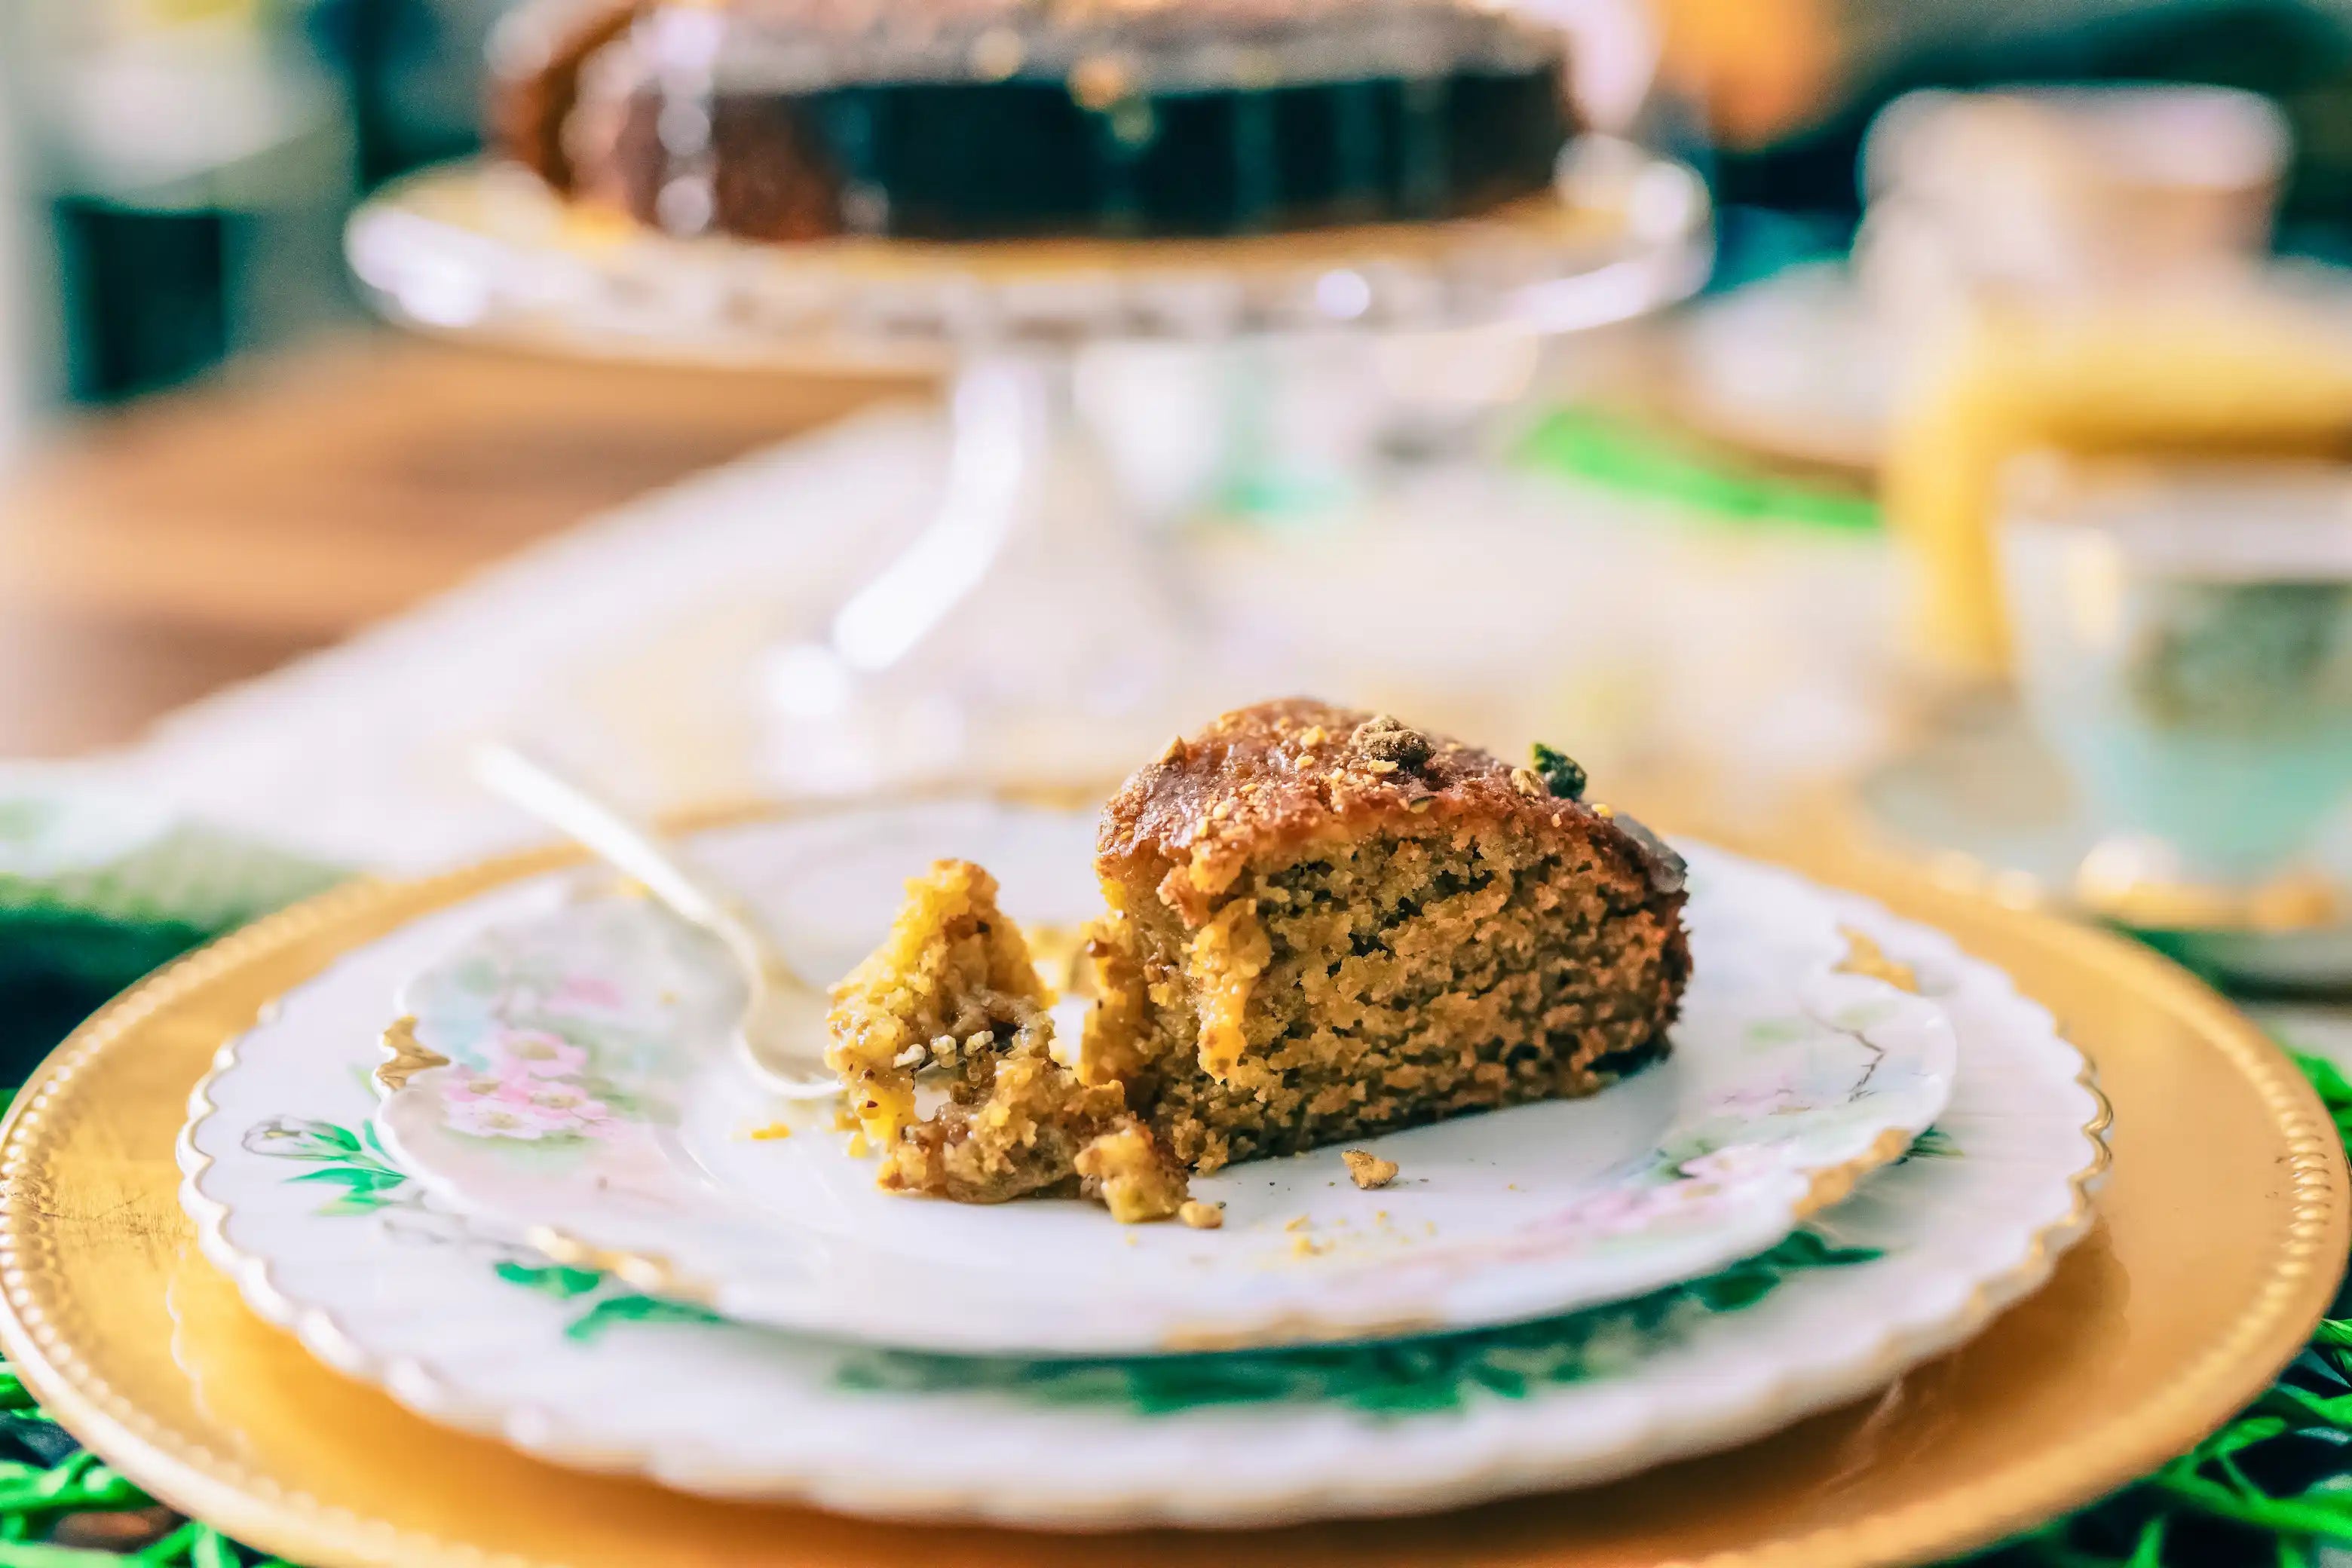 Orange Olive Oil Cake - Free Recipe - The Spice & Tea Shoppe